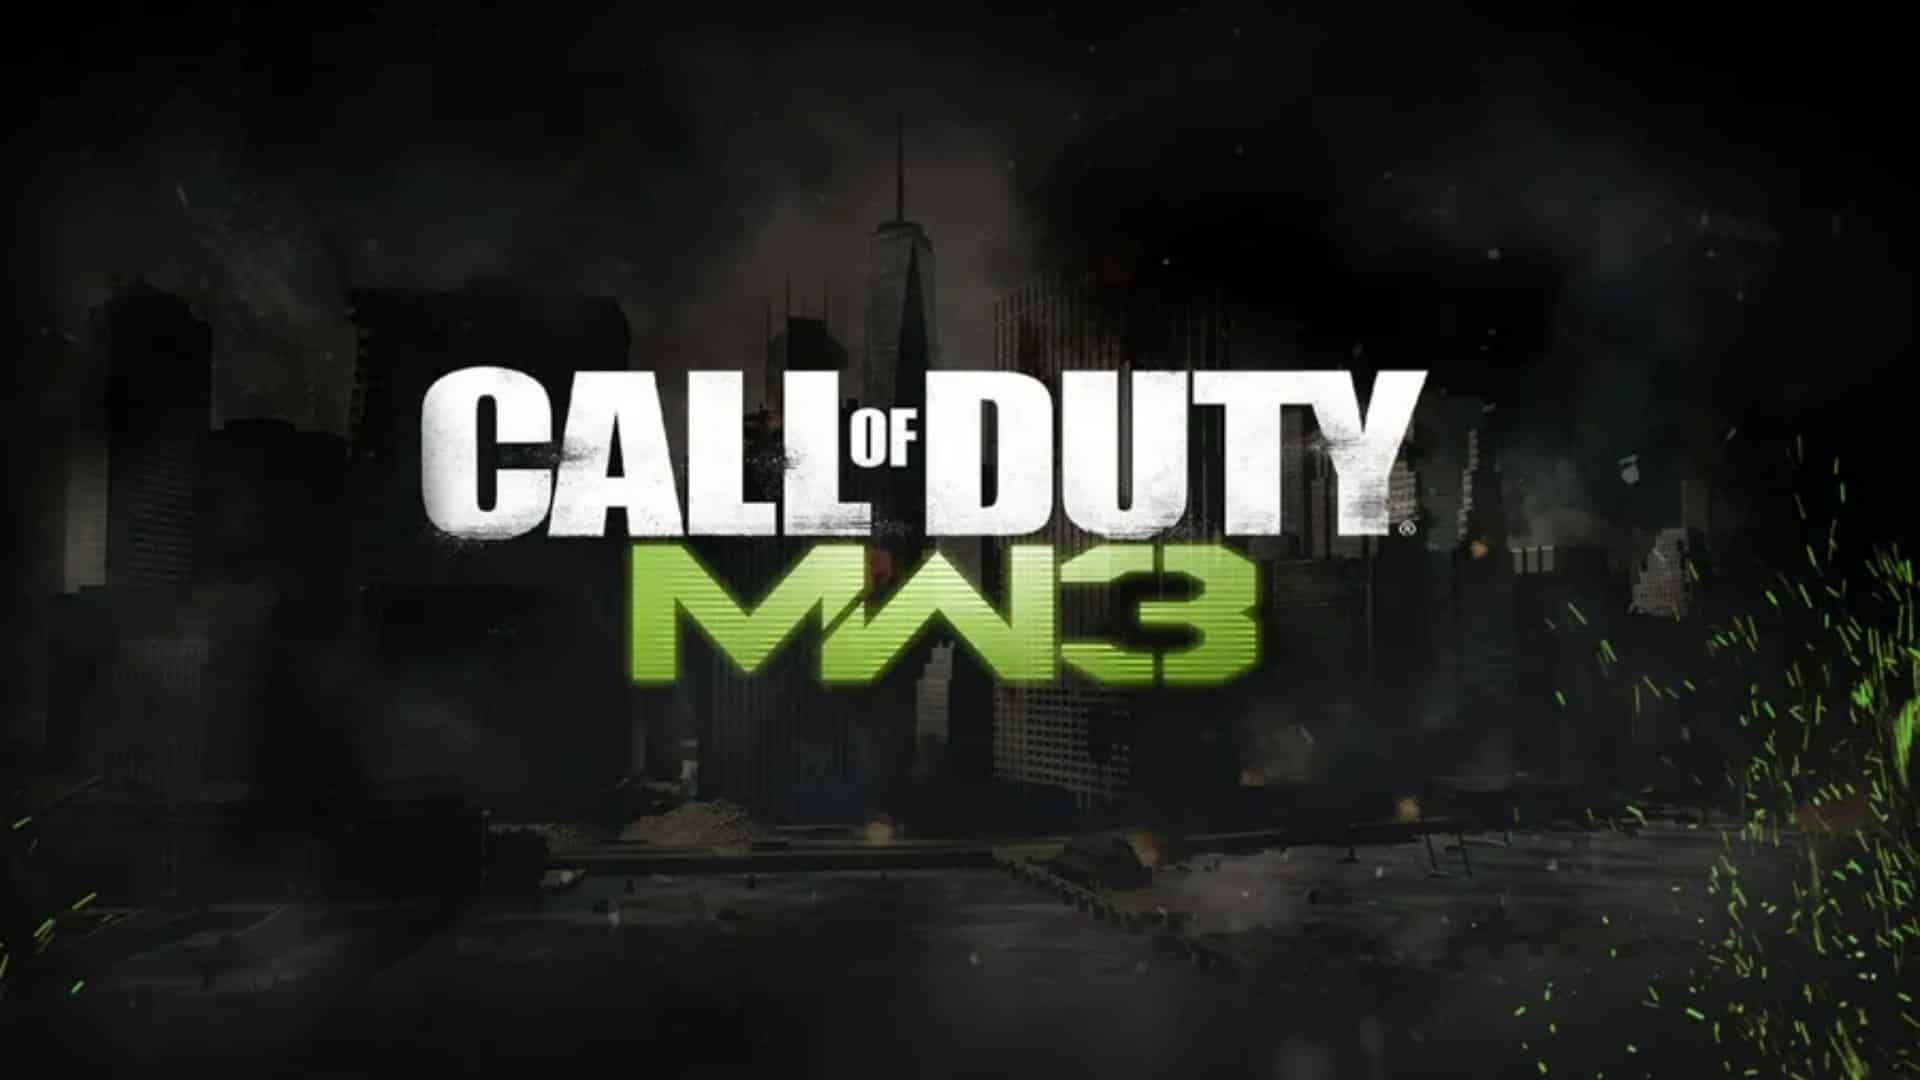 Heyecanla Beklenen Call of Duty Modern Warfare 3 Sonunda Duyuruldu! İşte Oyunun Çıkış Tarihi ve İlk Teaser